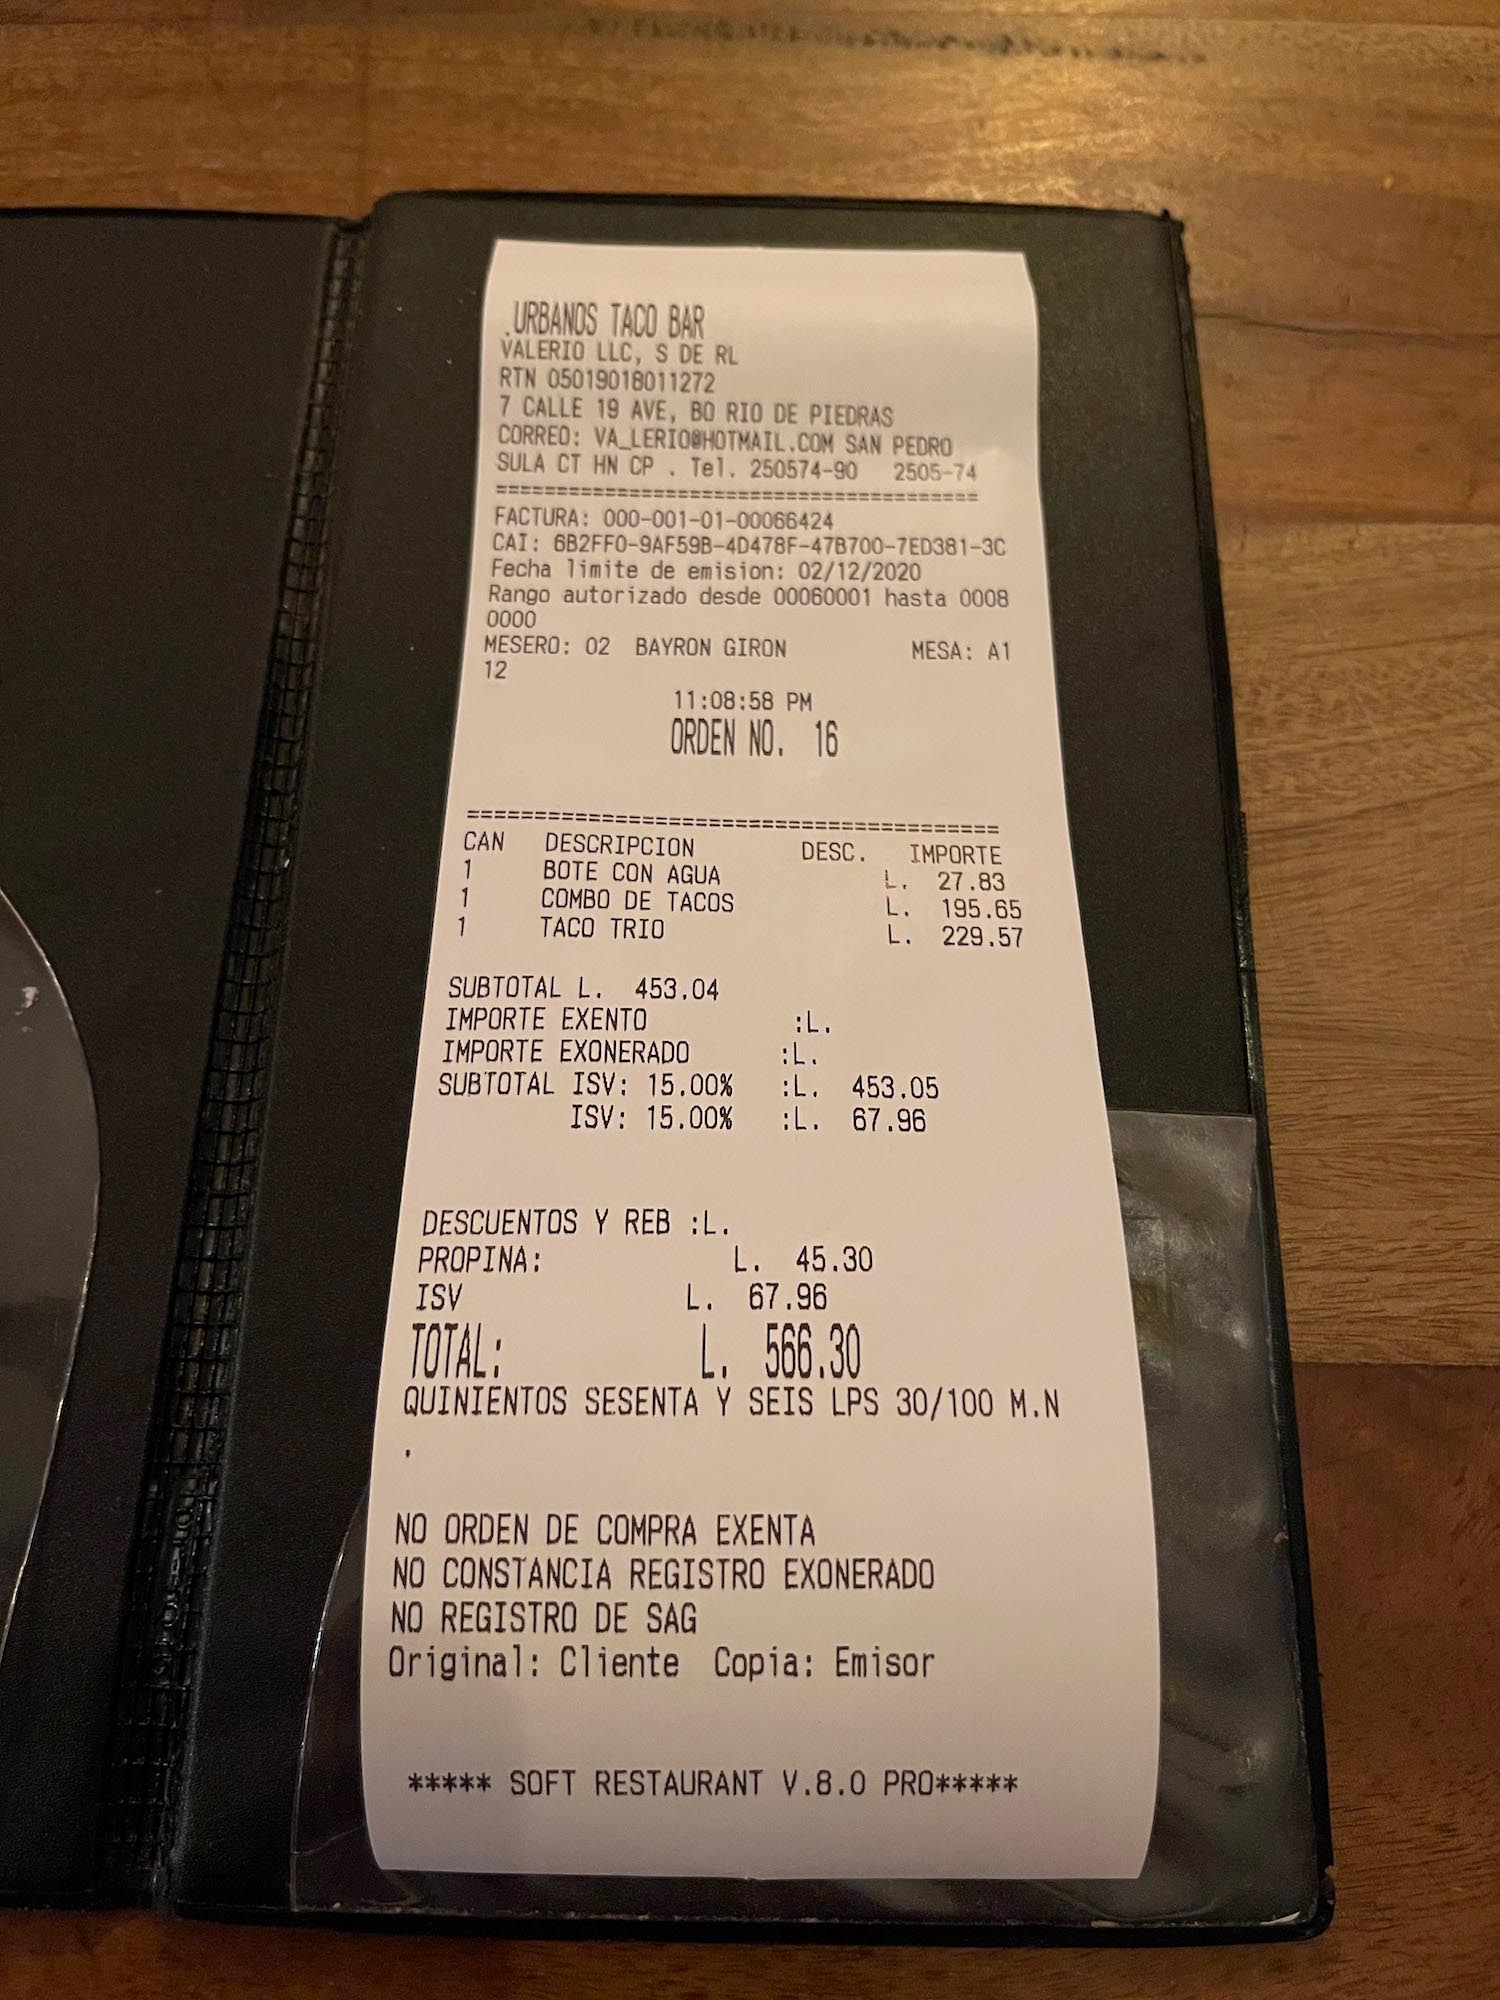 a receipt on a restaurant table